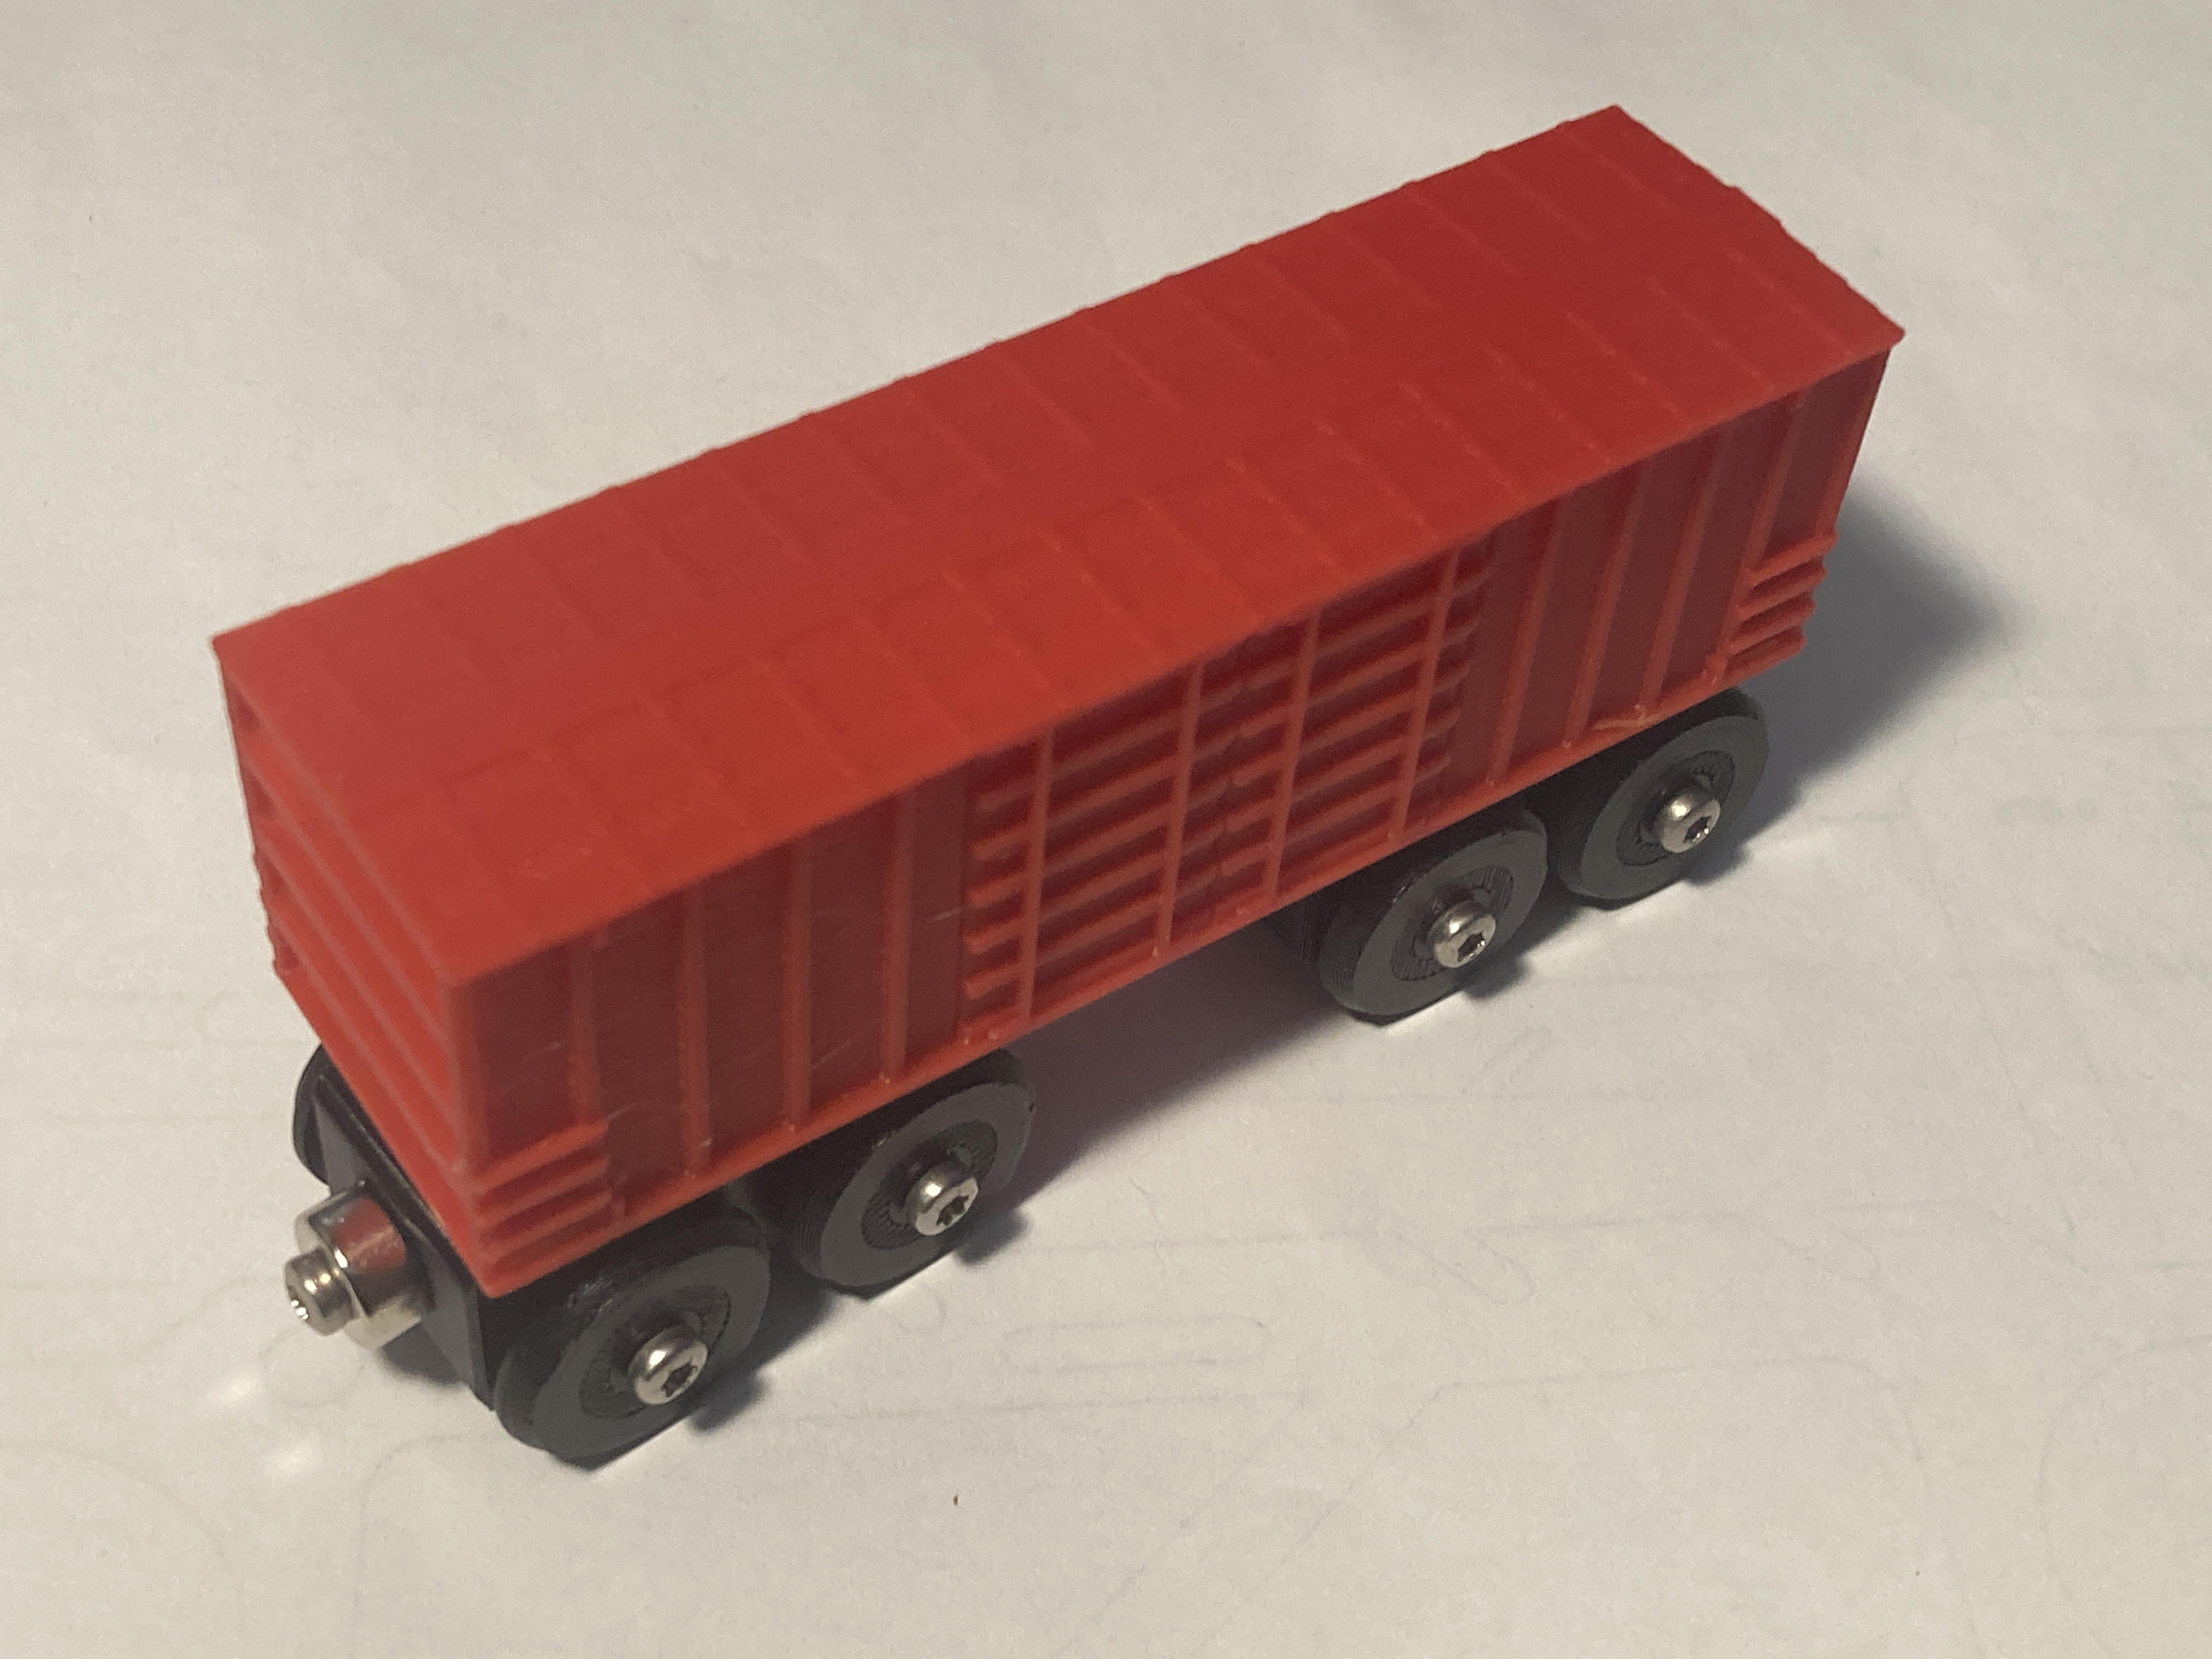 Toy Train Box Car BRIO / IKEA compatible